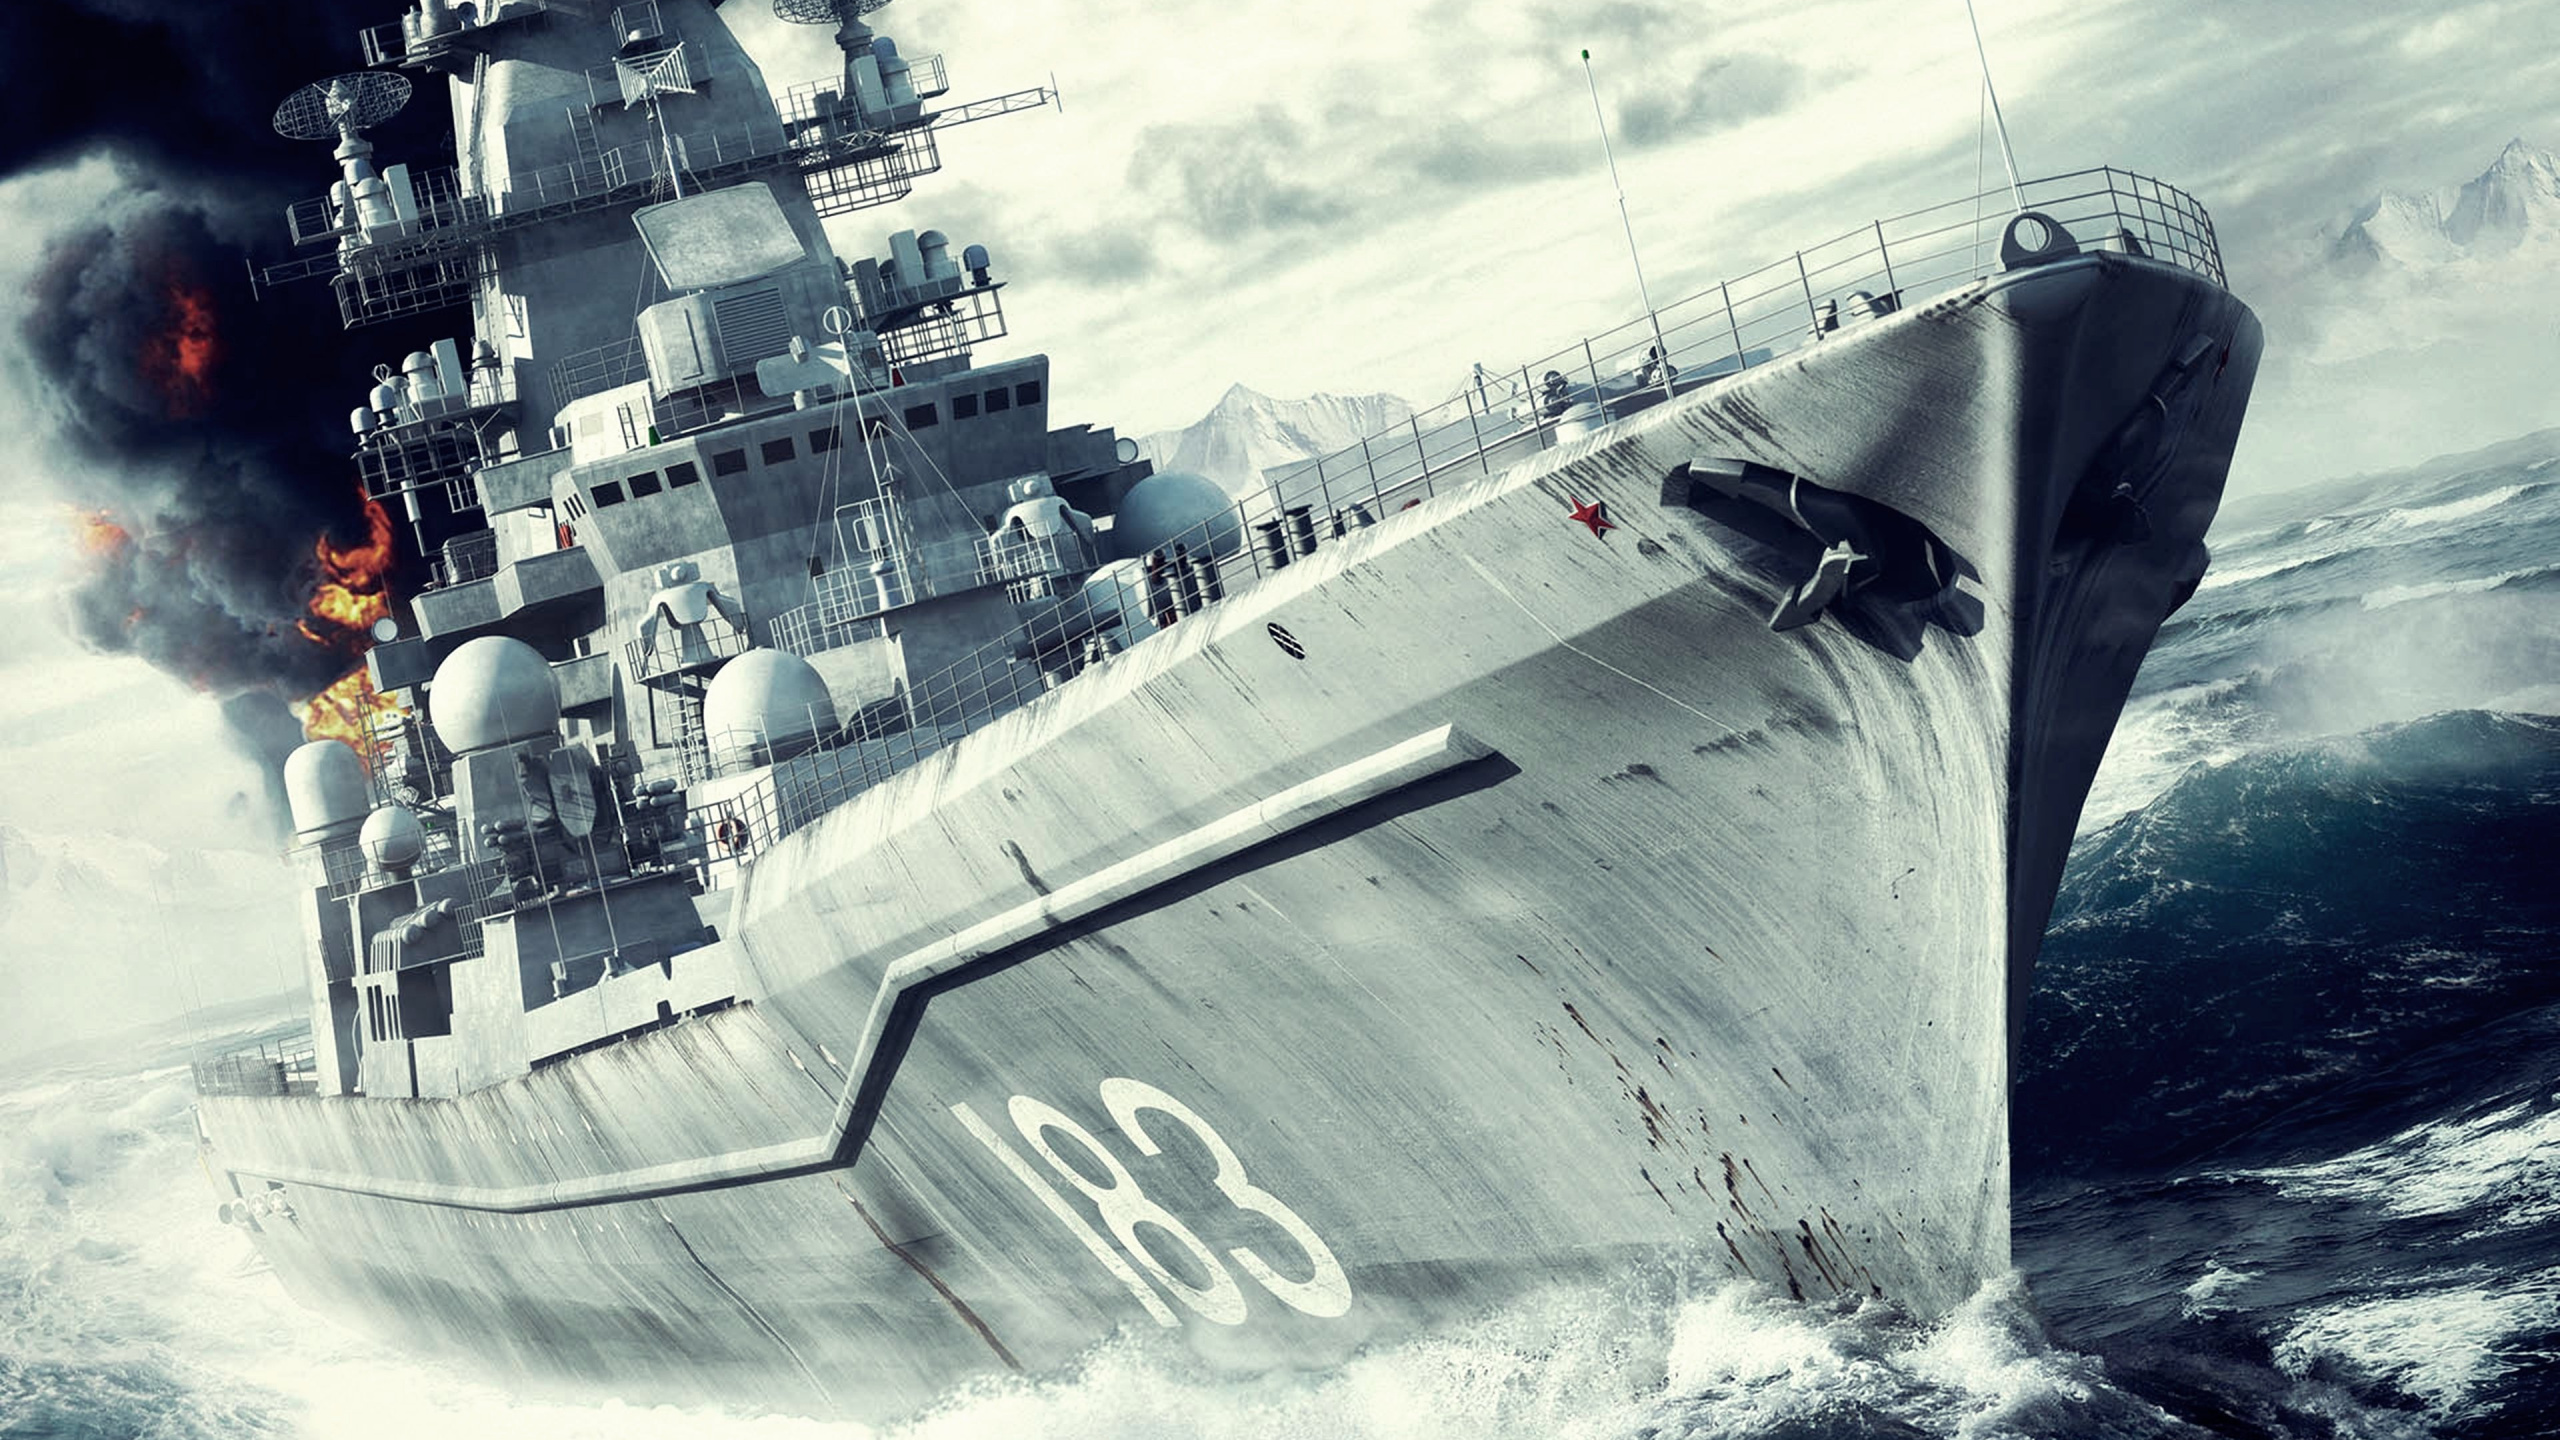 Schlachtschiff, Marine-Schiff, Kriegsschiff, Kreuzer, Zerst. Wallpaper in 2560x1440 Resolution